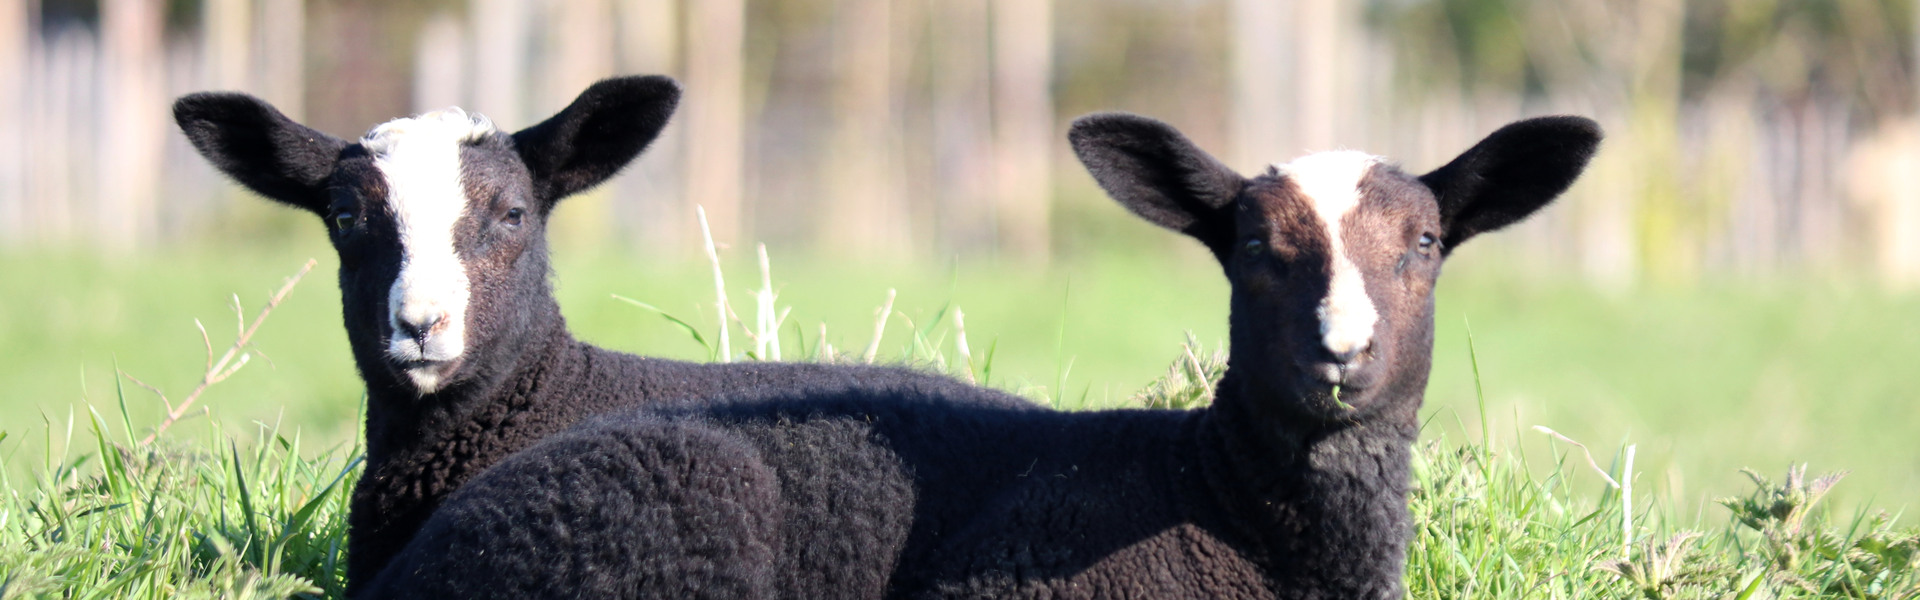 Två svarta lamm sitter ute på gräset